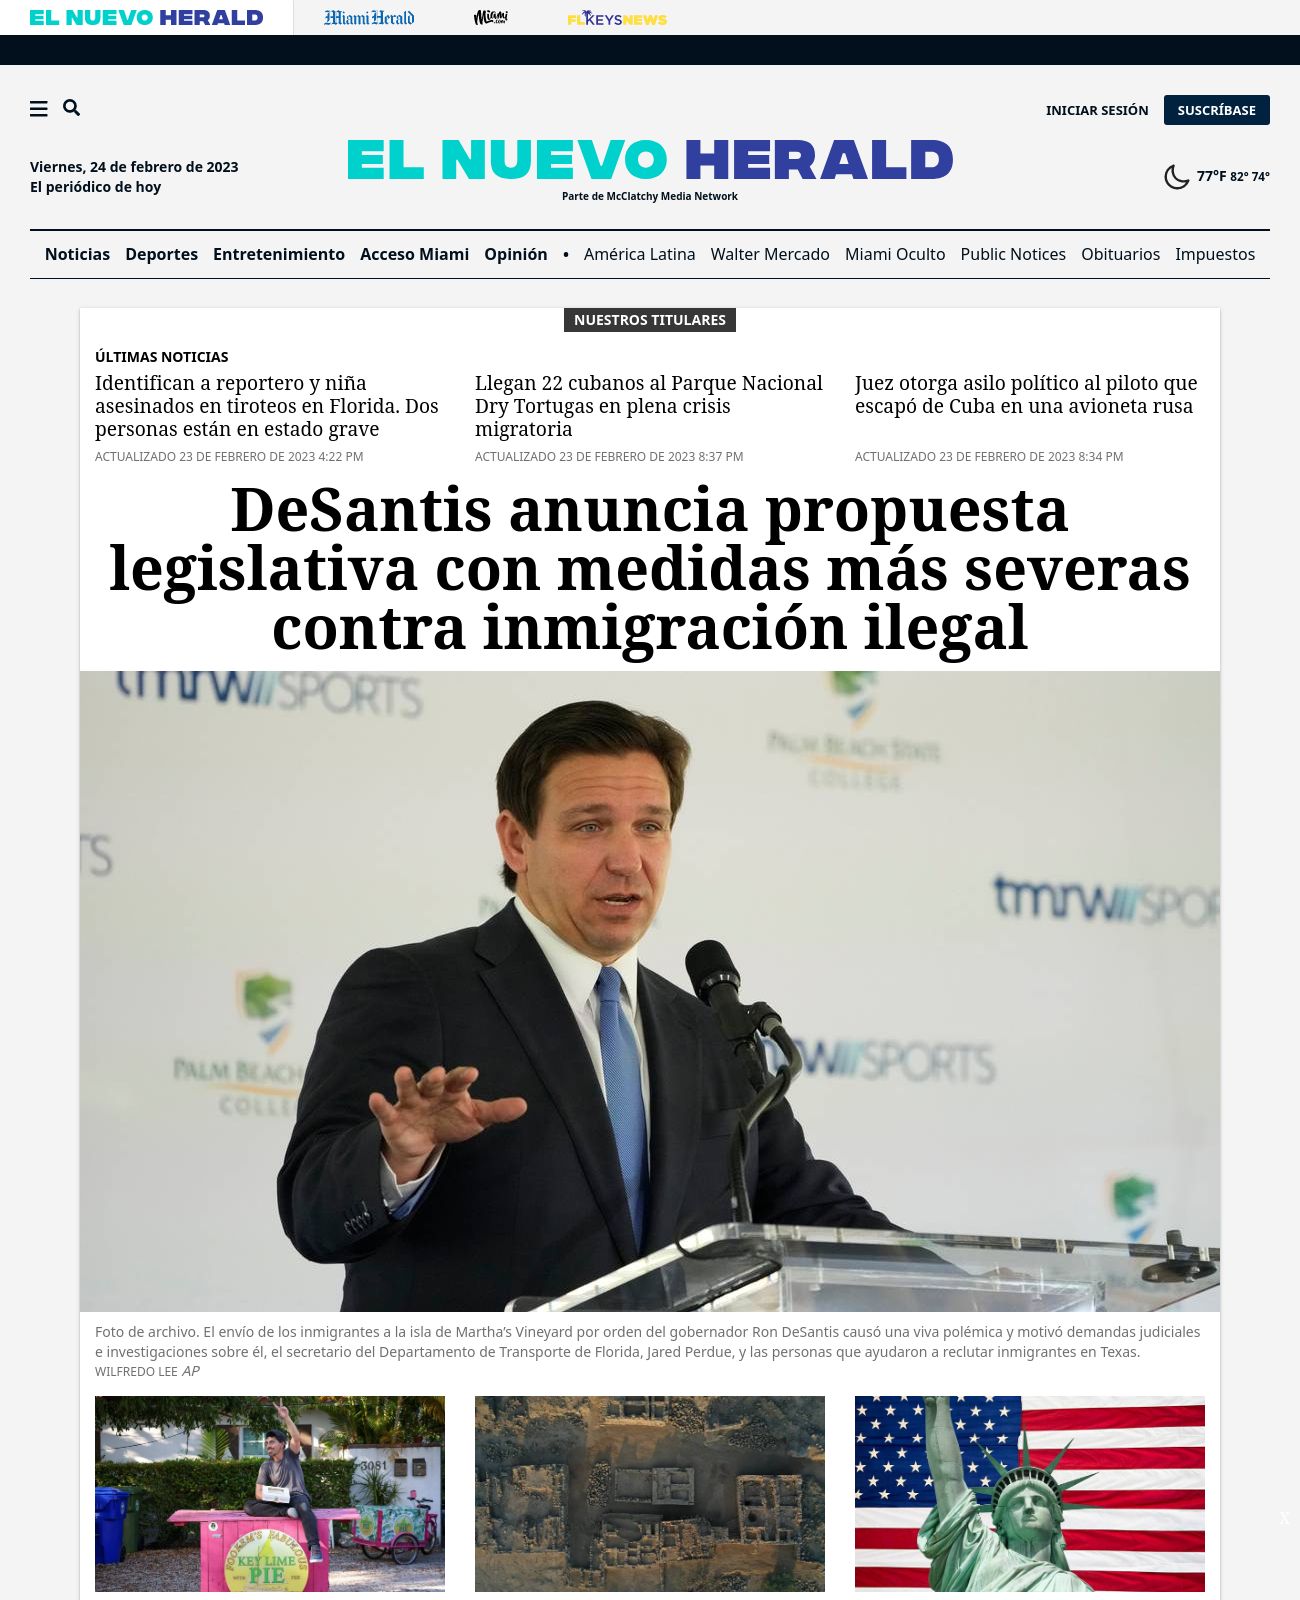 El Nuevo Herald at 2023-02-23 20:50:27-05:00 local time